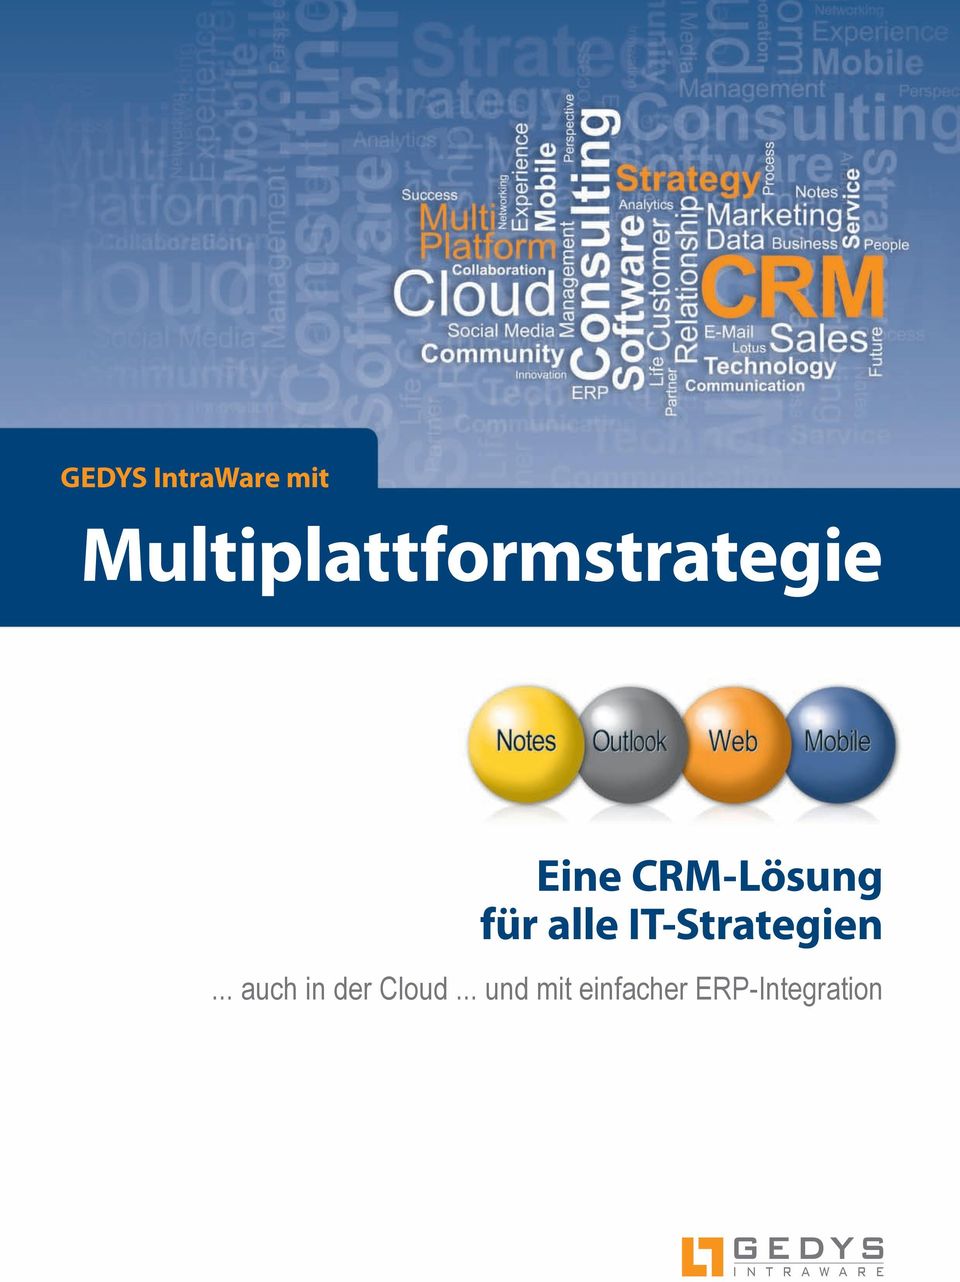 CRM-Lösung für alle IT-Strategien.